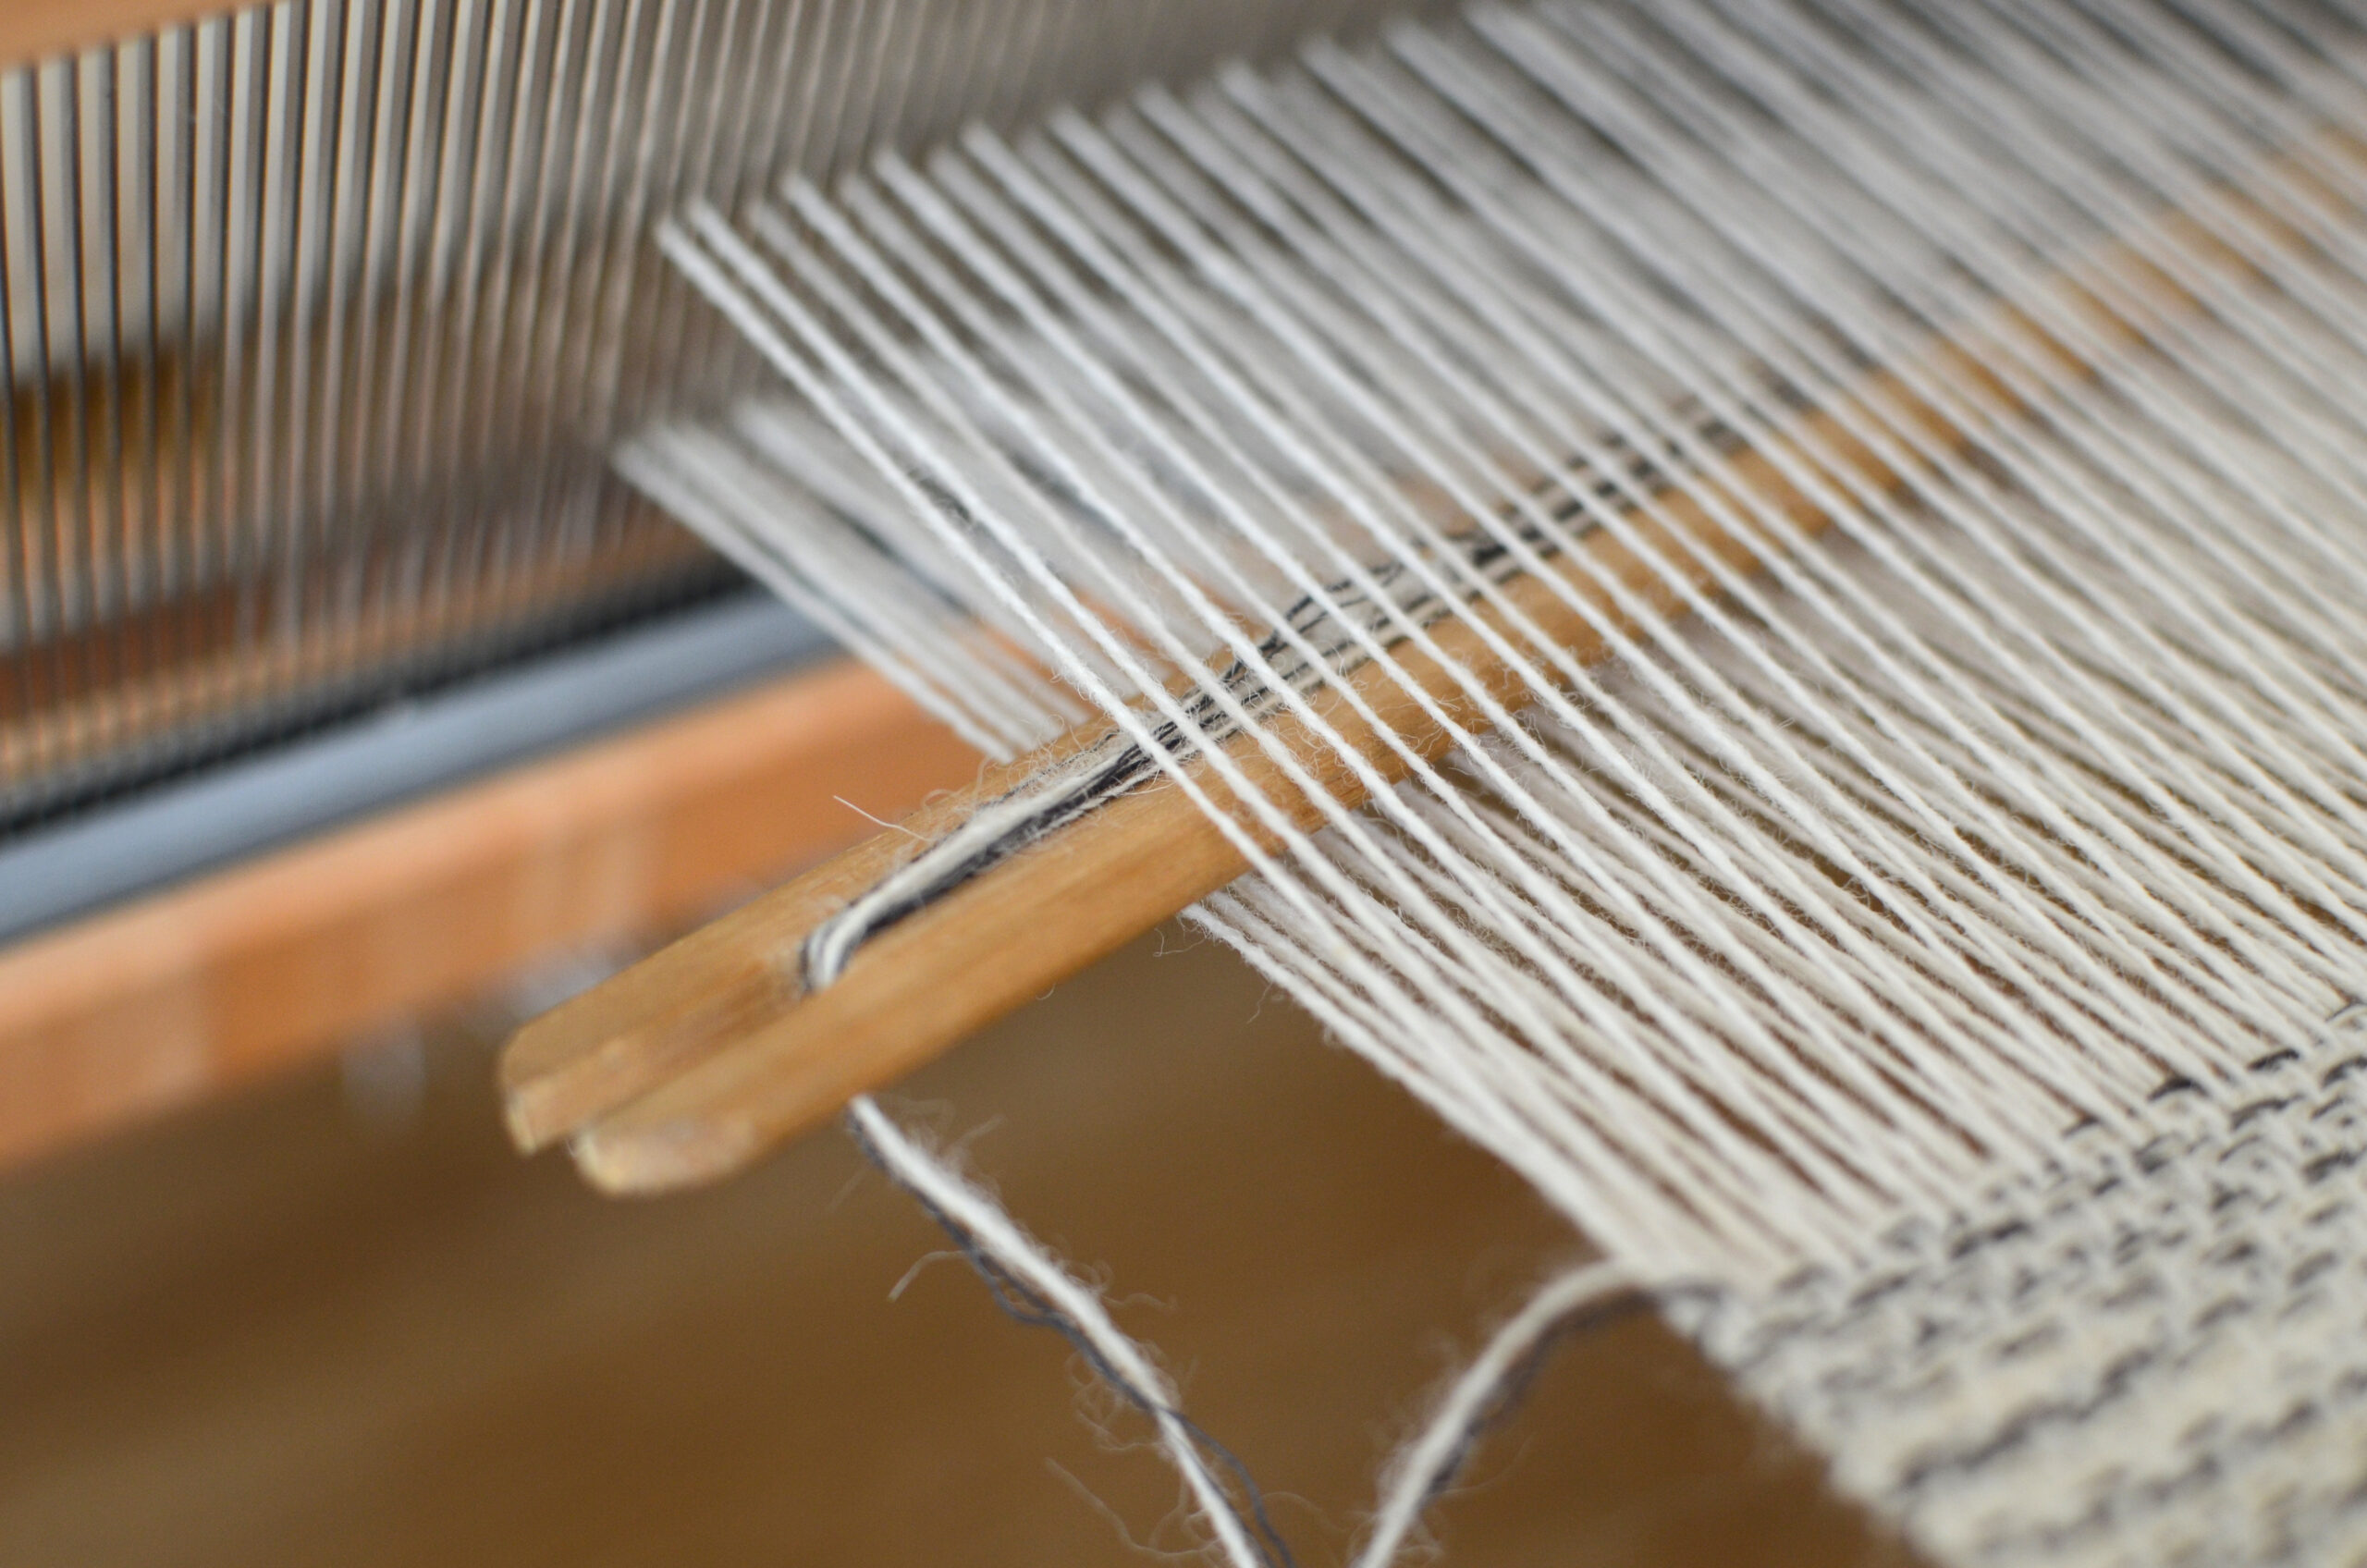 How to weave for beginners - Studio Koekoek